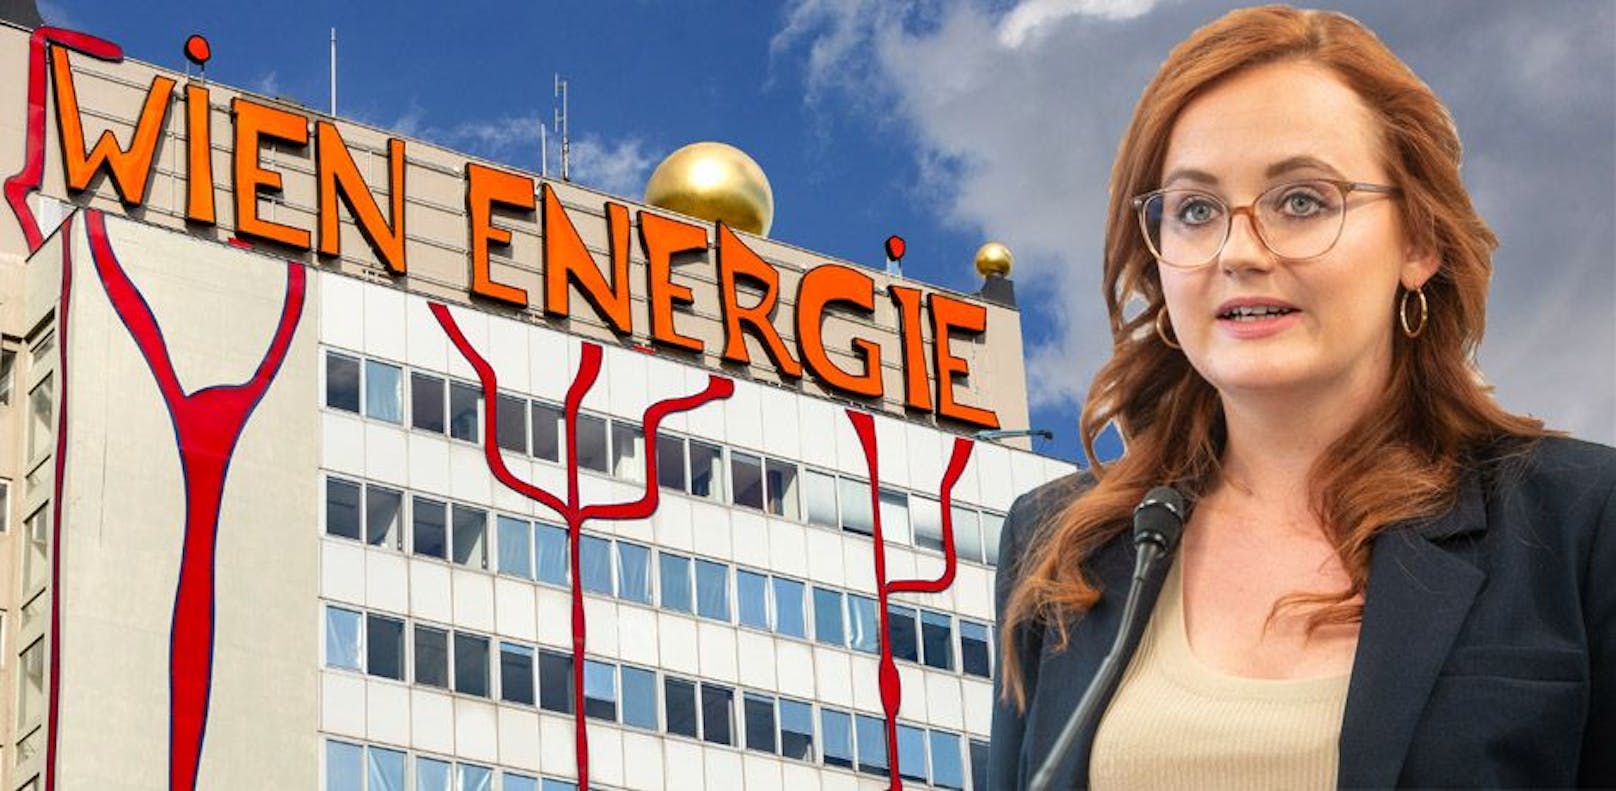 "Farce" – Opposition schäumt nach Wien-Energie-Skandal